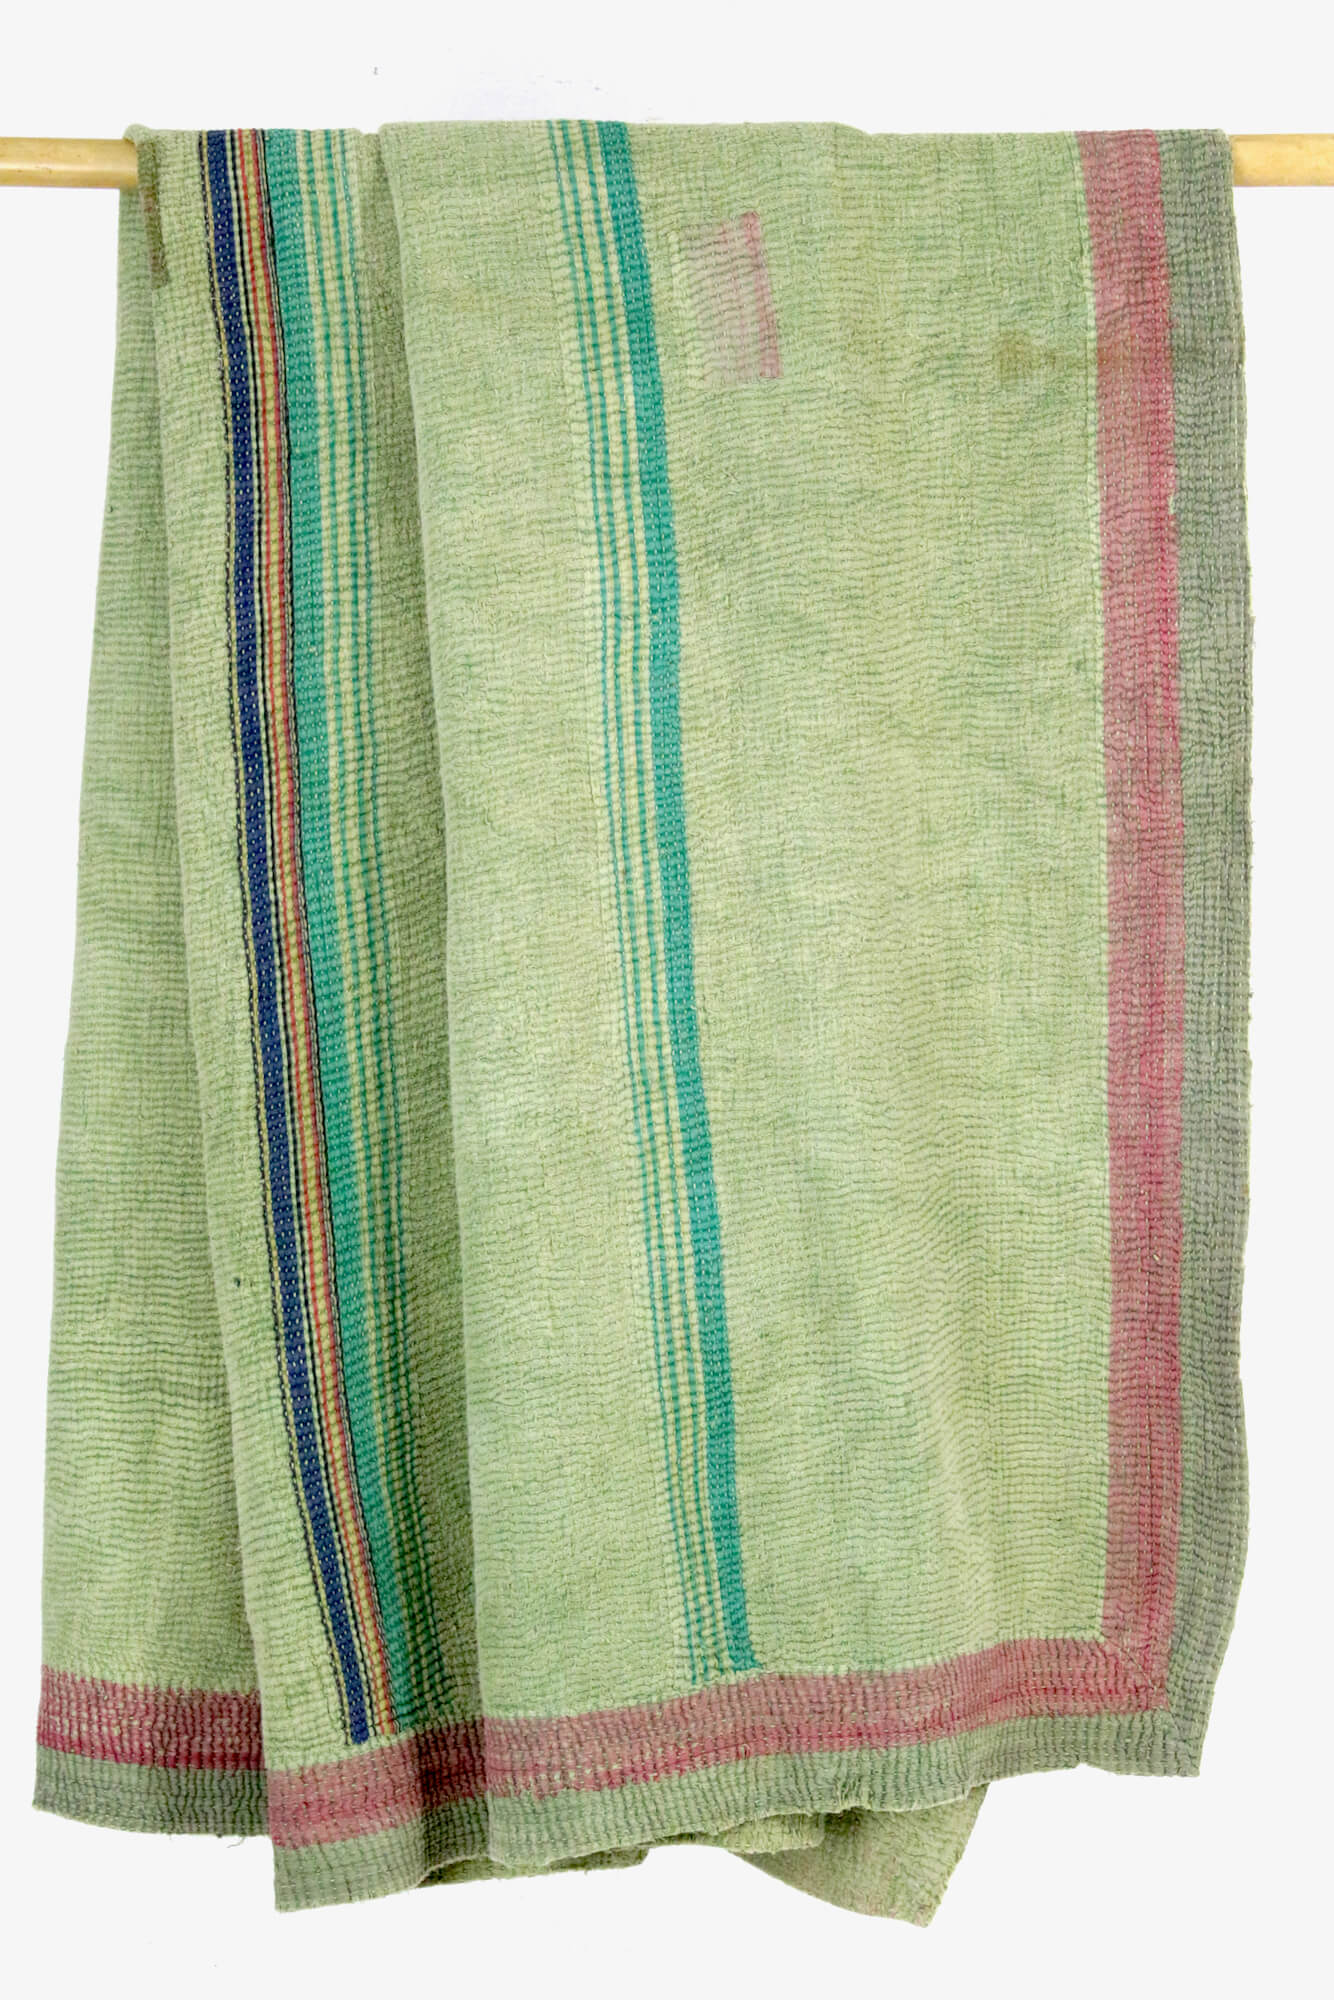 Decke aus Vintage Stoffen, Indien